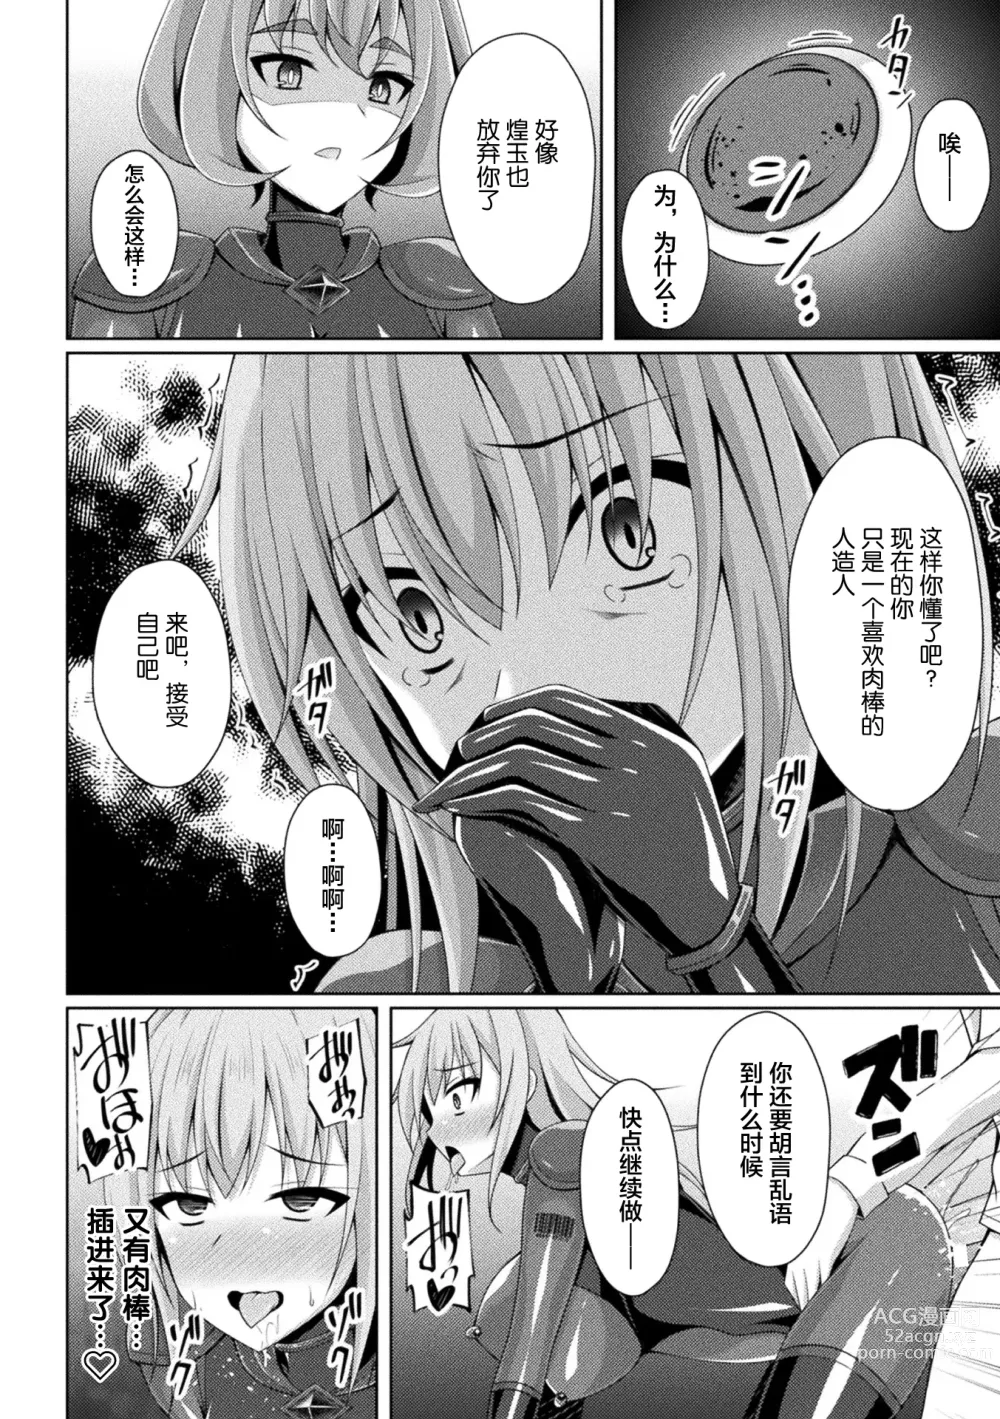 Page 20 of manga Kougyokutenki Glitter Stars ep3. Kuzureru Nichijou, Kuraki En no Yadoru Toki